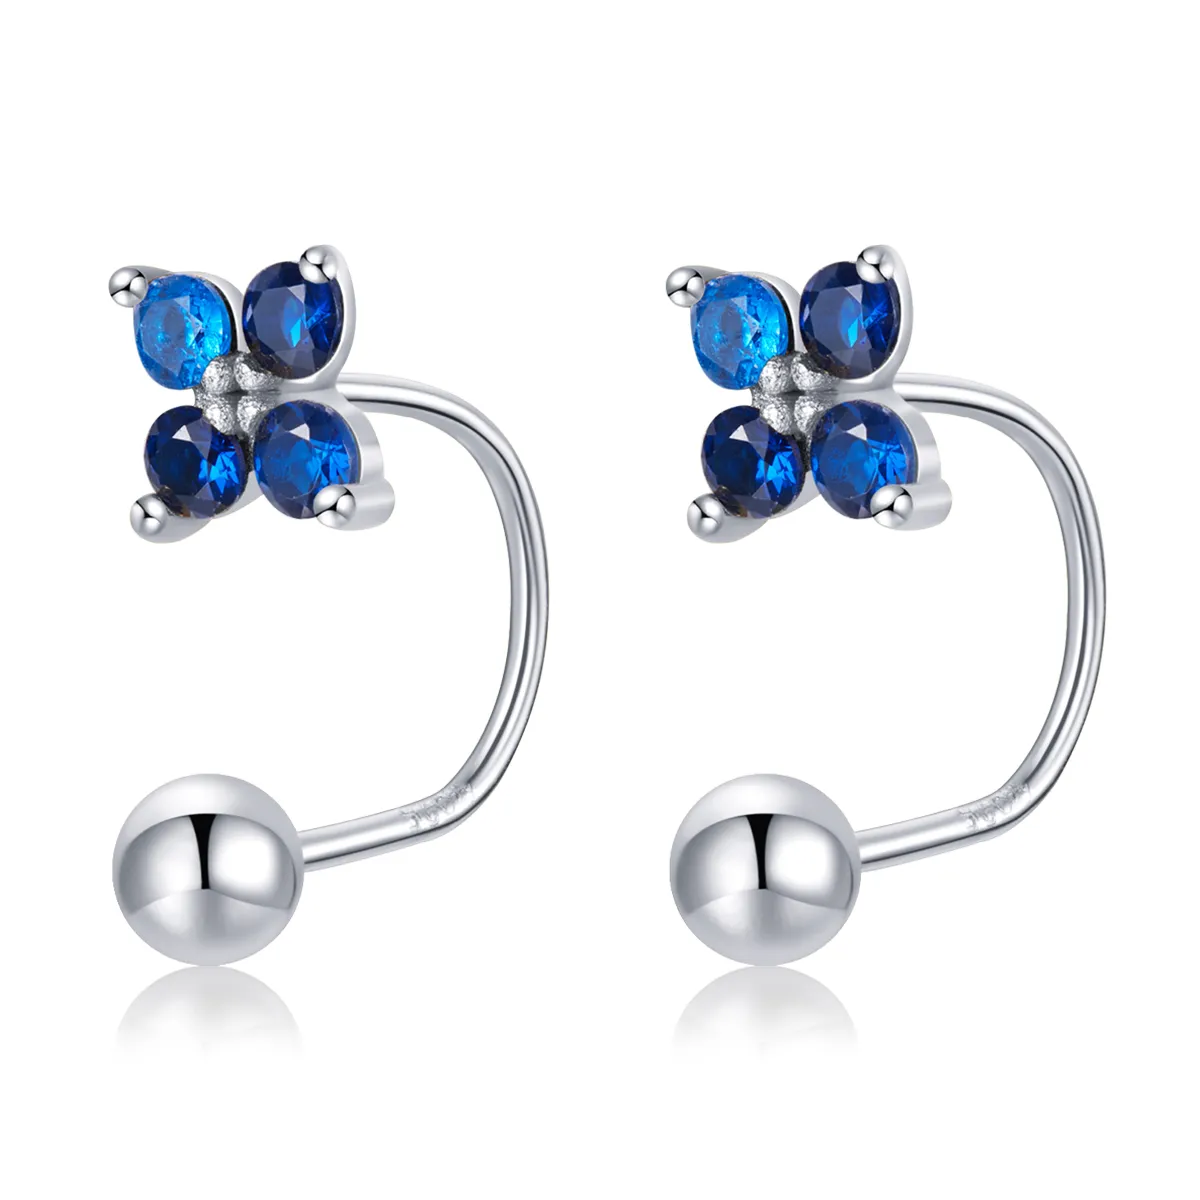 Pandora Style Four-Petal Flower Stud Earrings - SCE1177-A